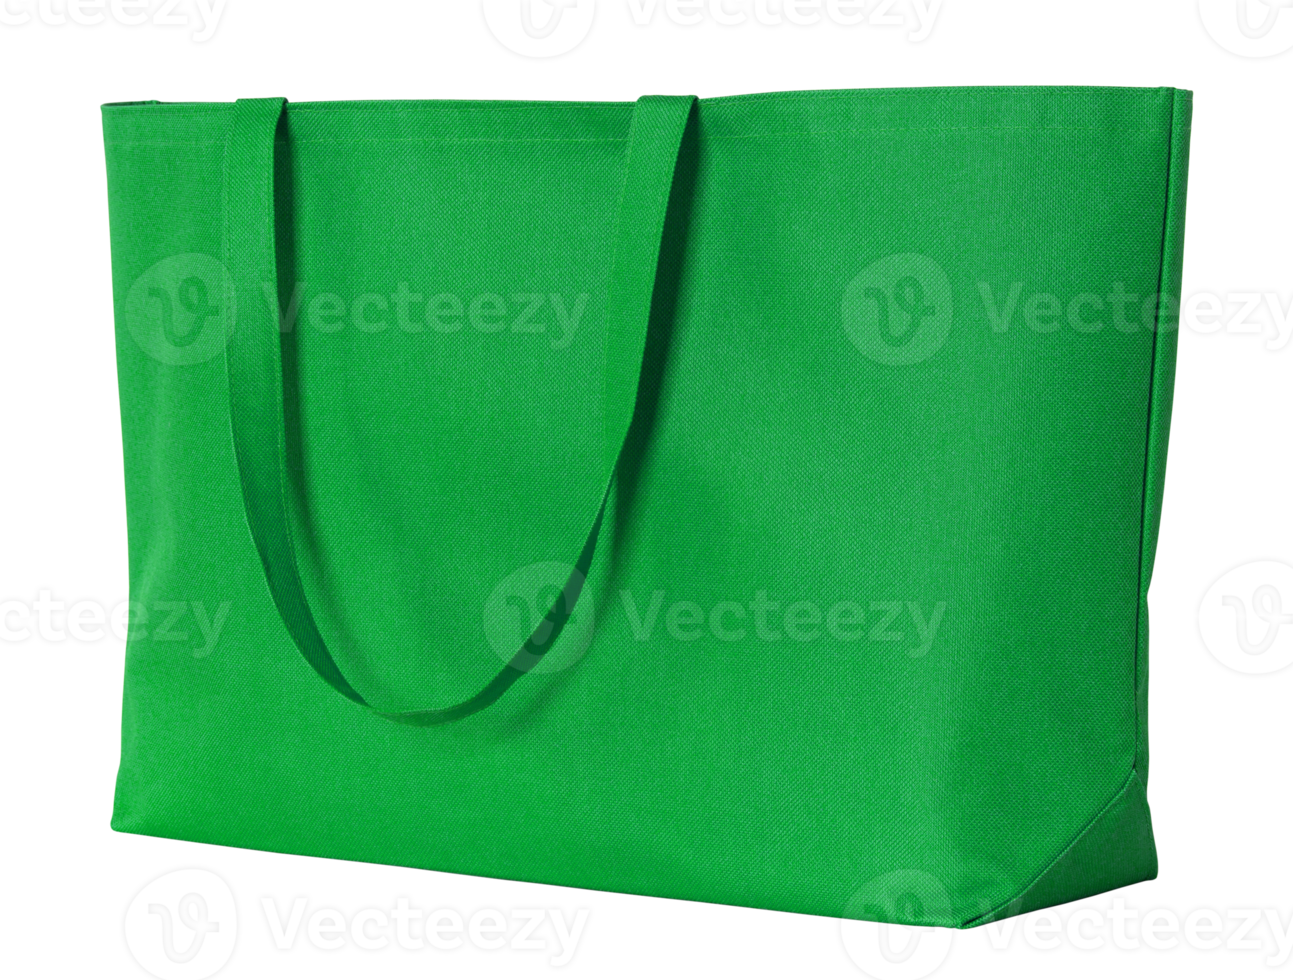 bolsa de tela verde aislada con trazado de recorte para maqueta png